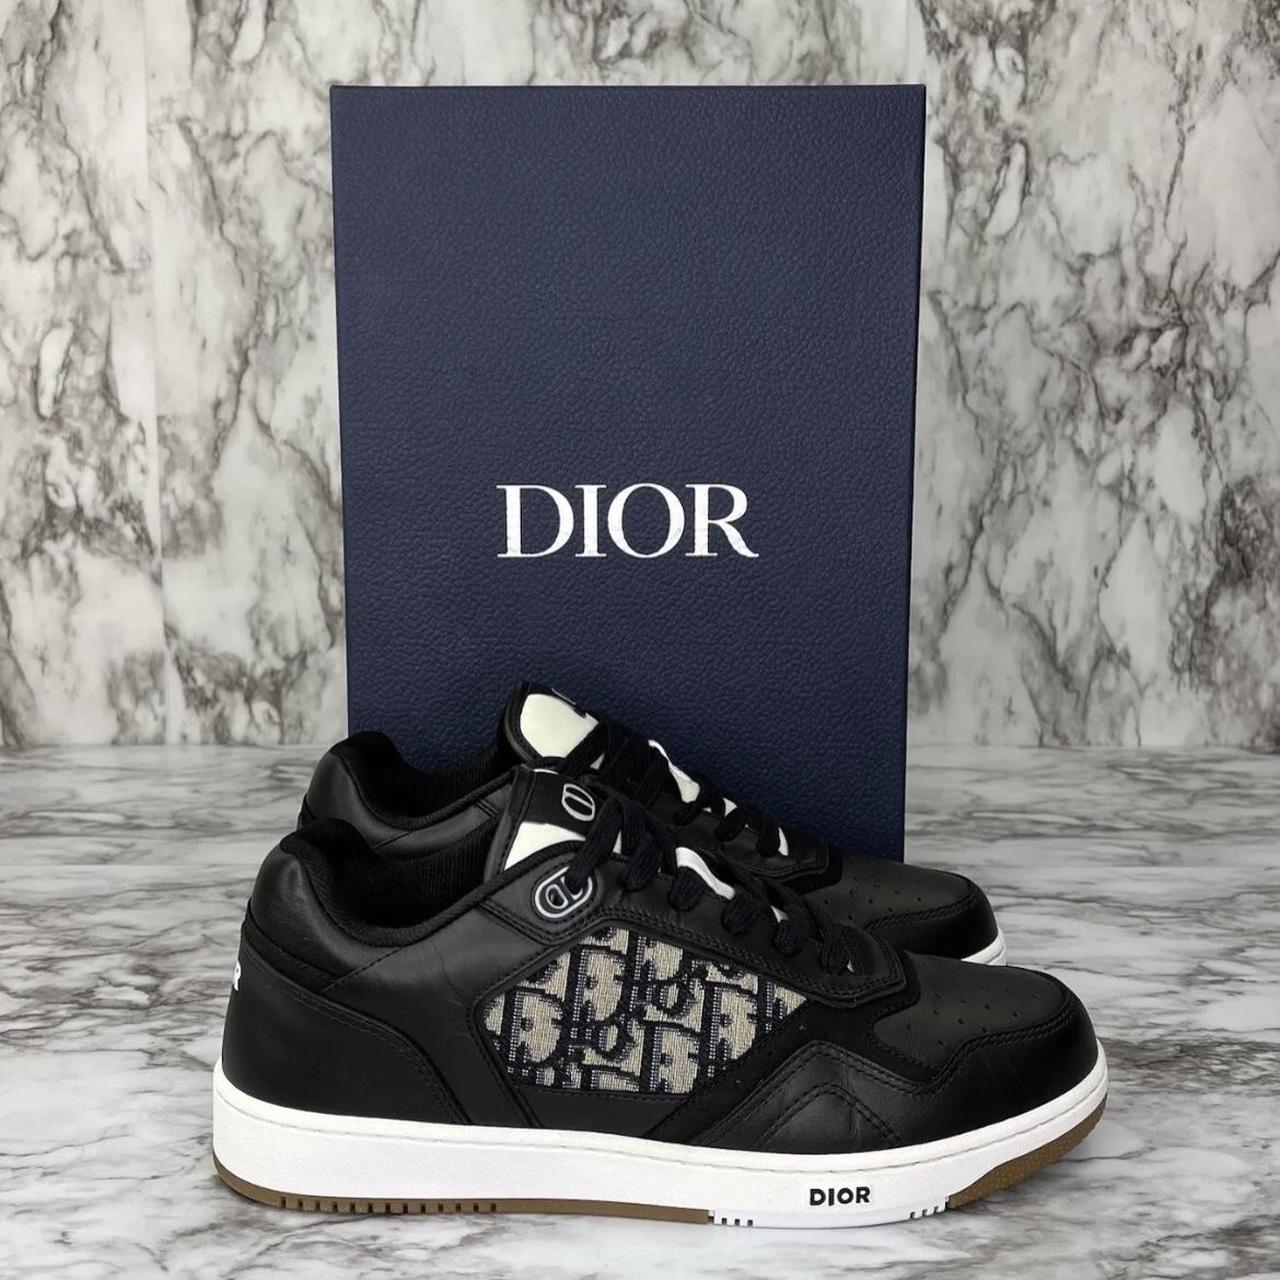 Dior Men's B27 Low-top Sneaker